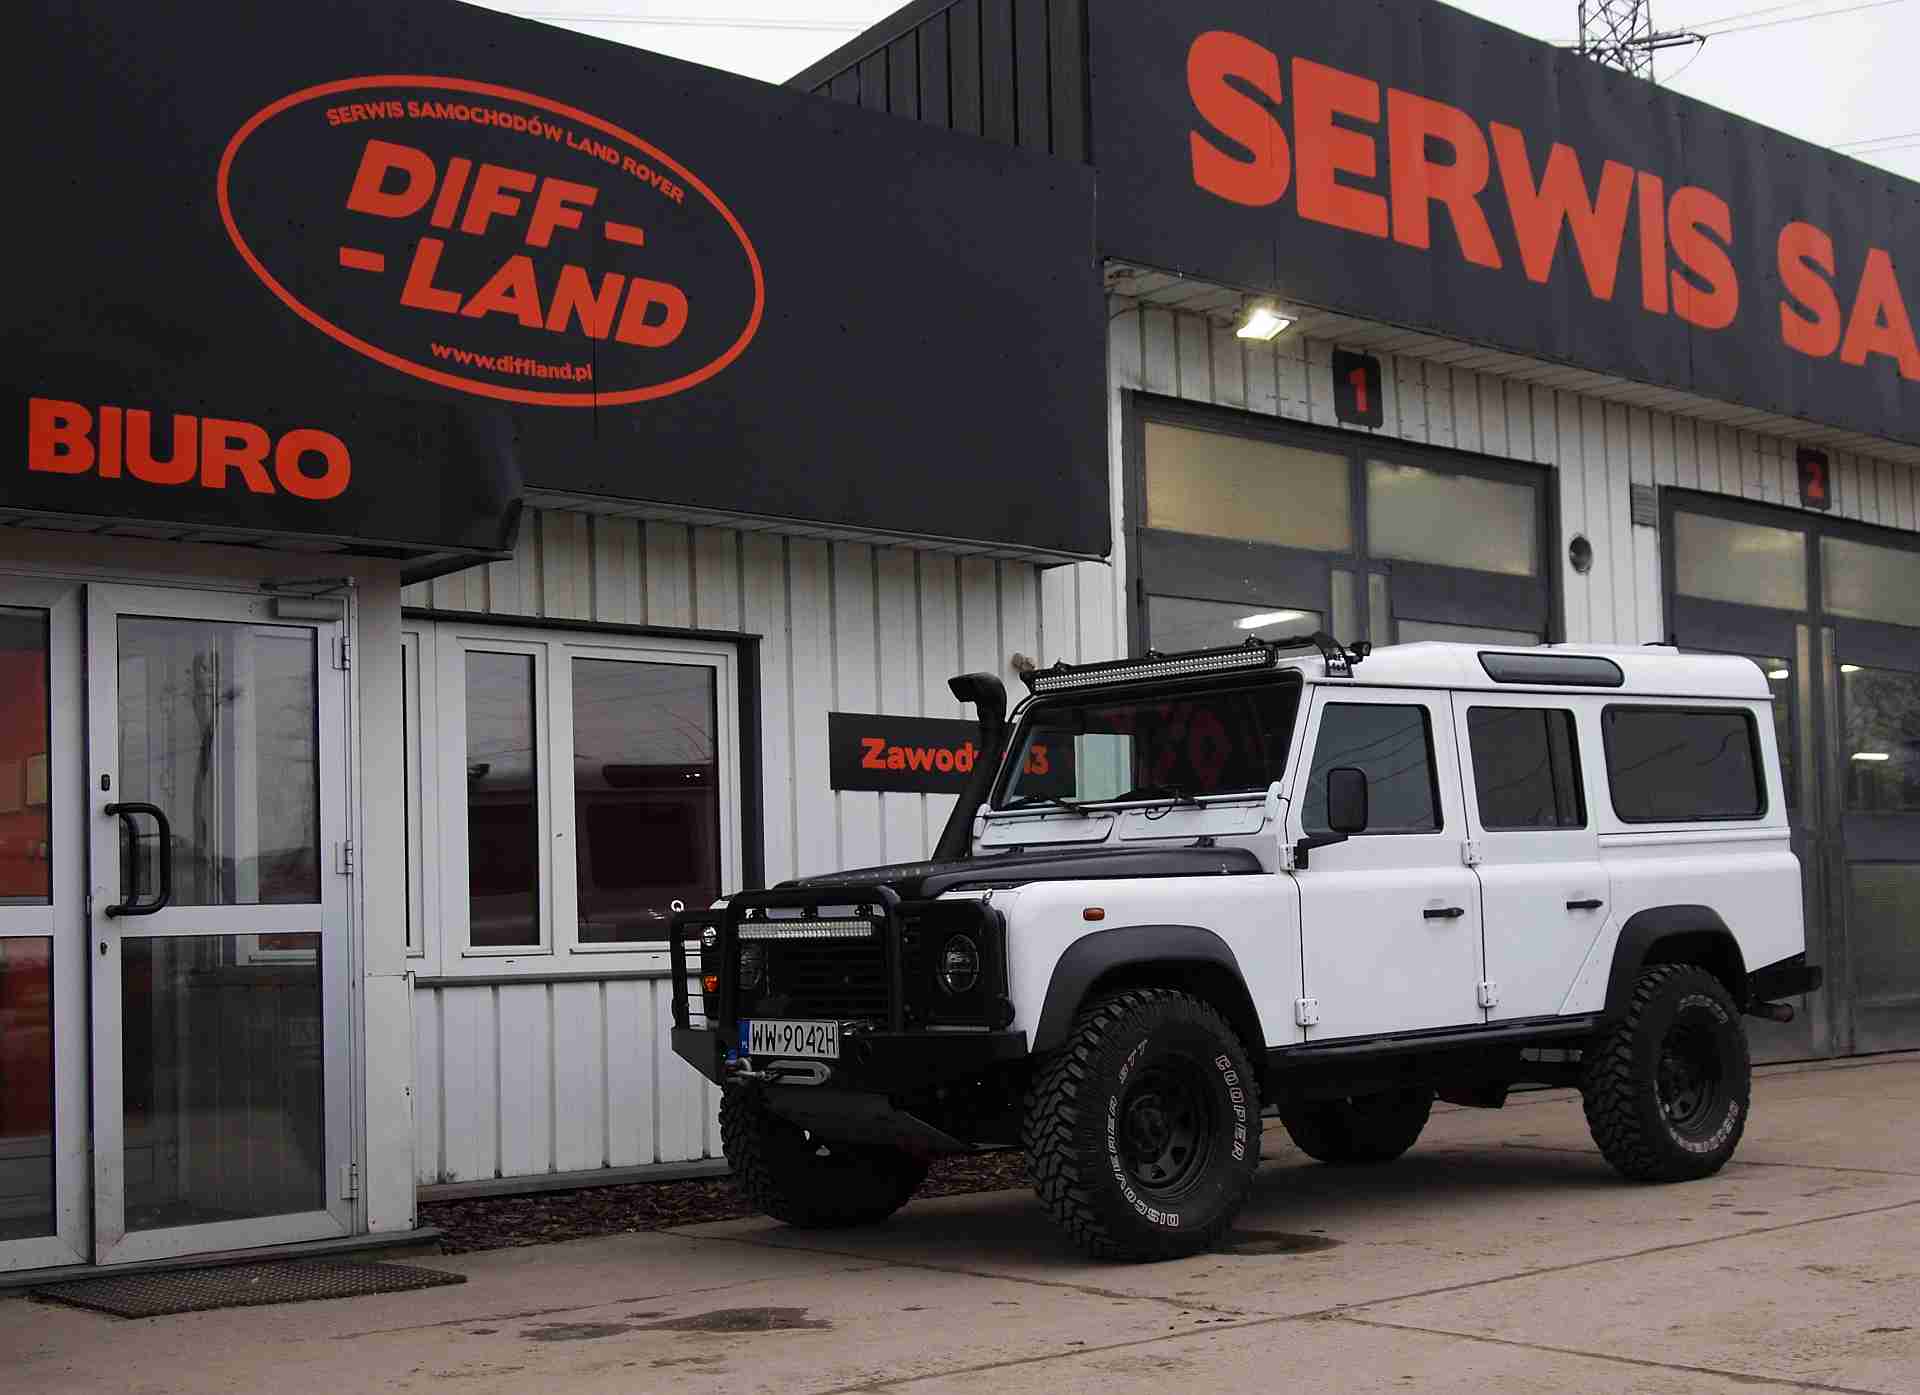 Land Rover Defender 110 TD5 2,5l 2003 diffland.pl